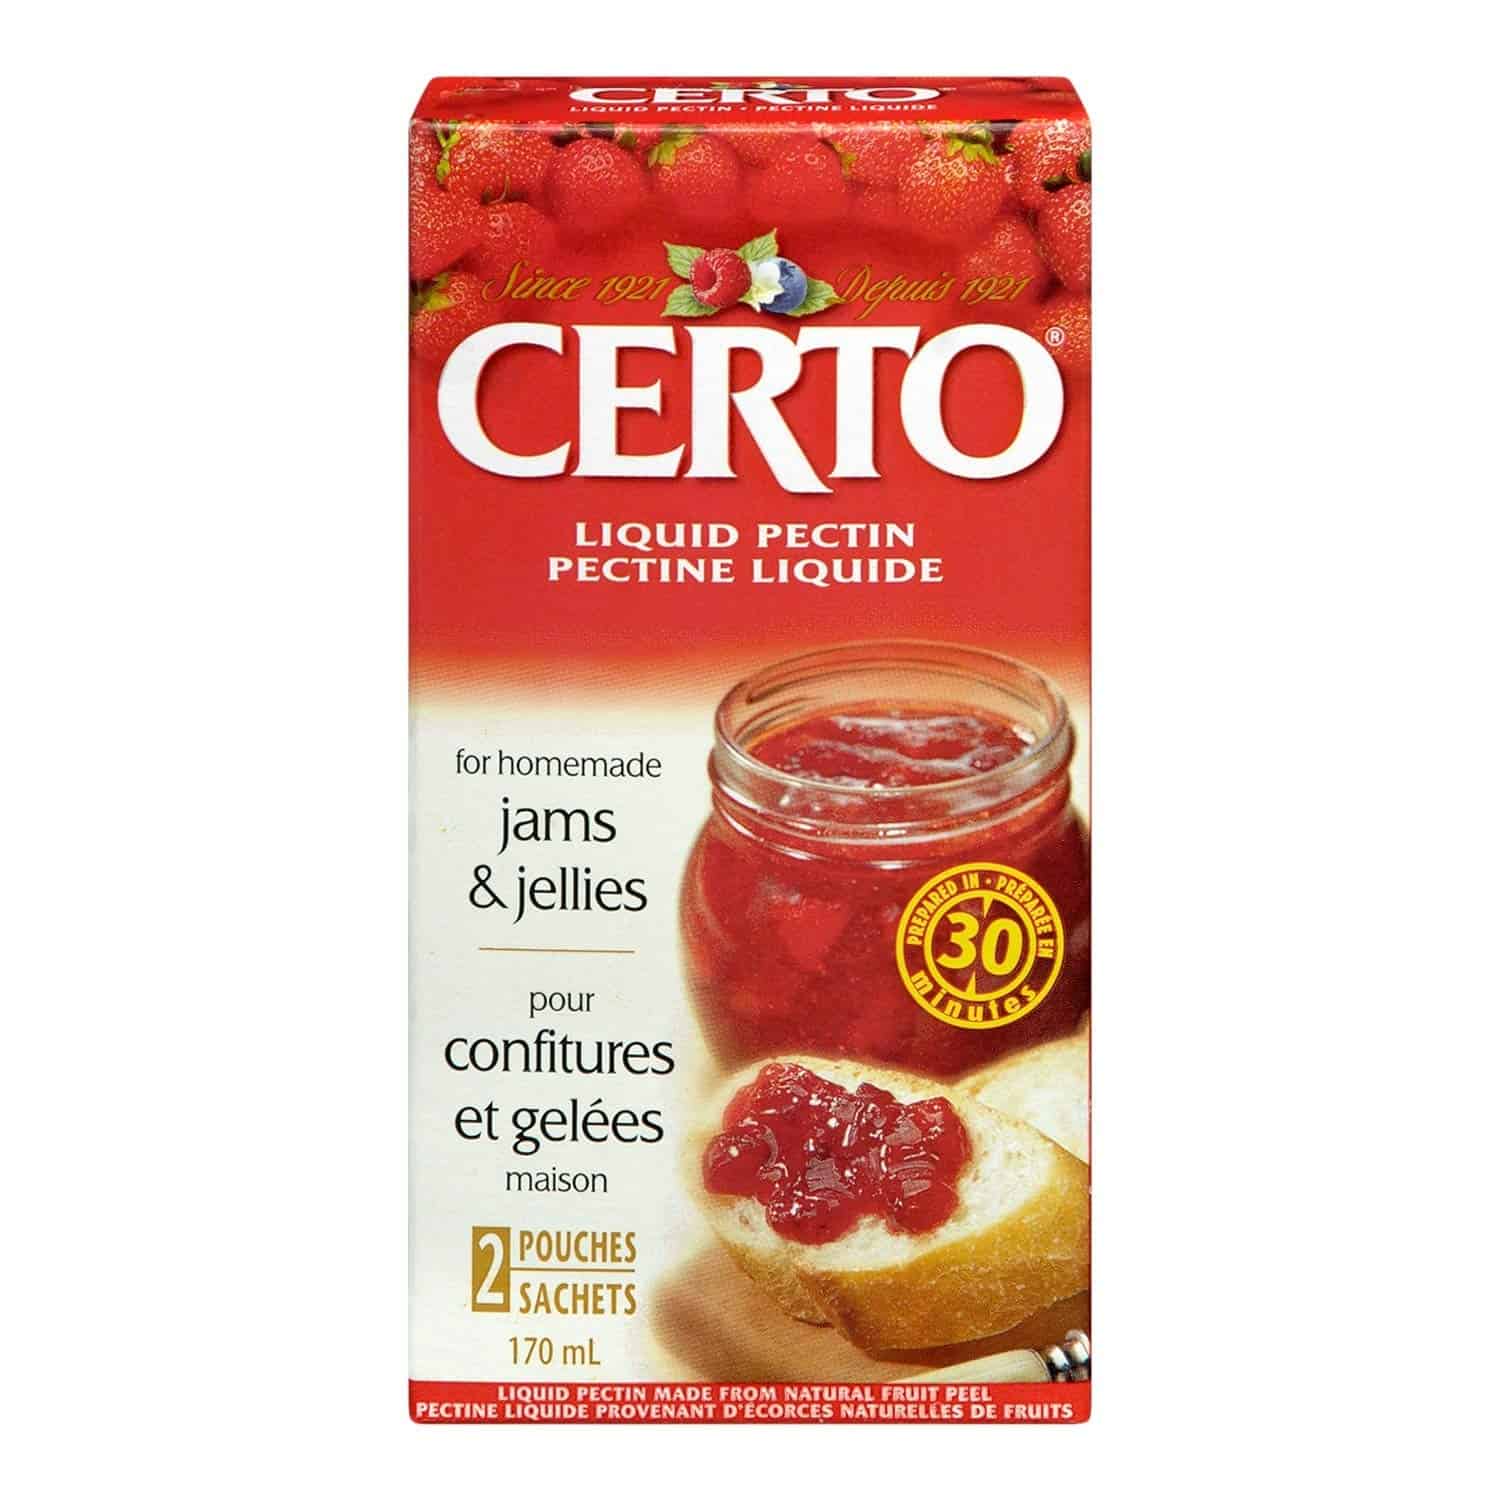 CERTO Pectin Liquid, 1 Count, 170ml